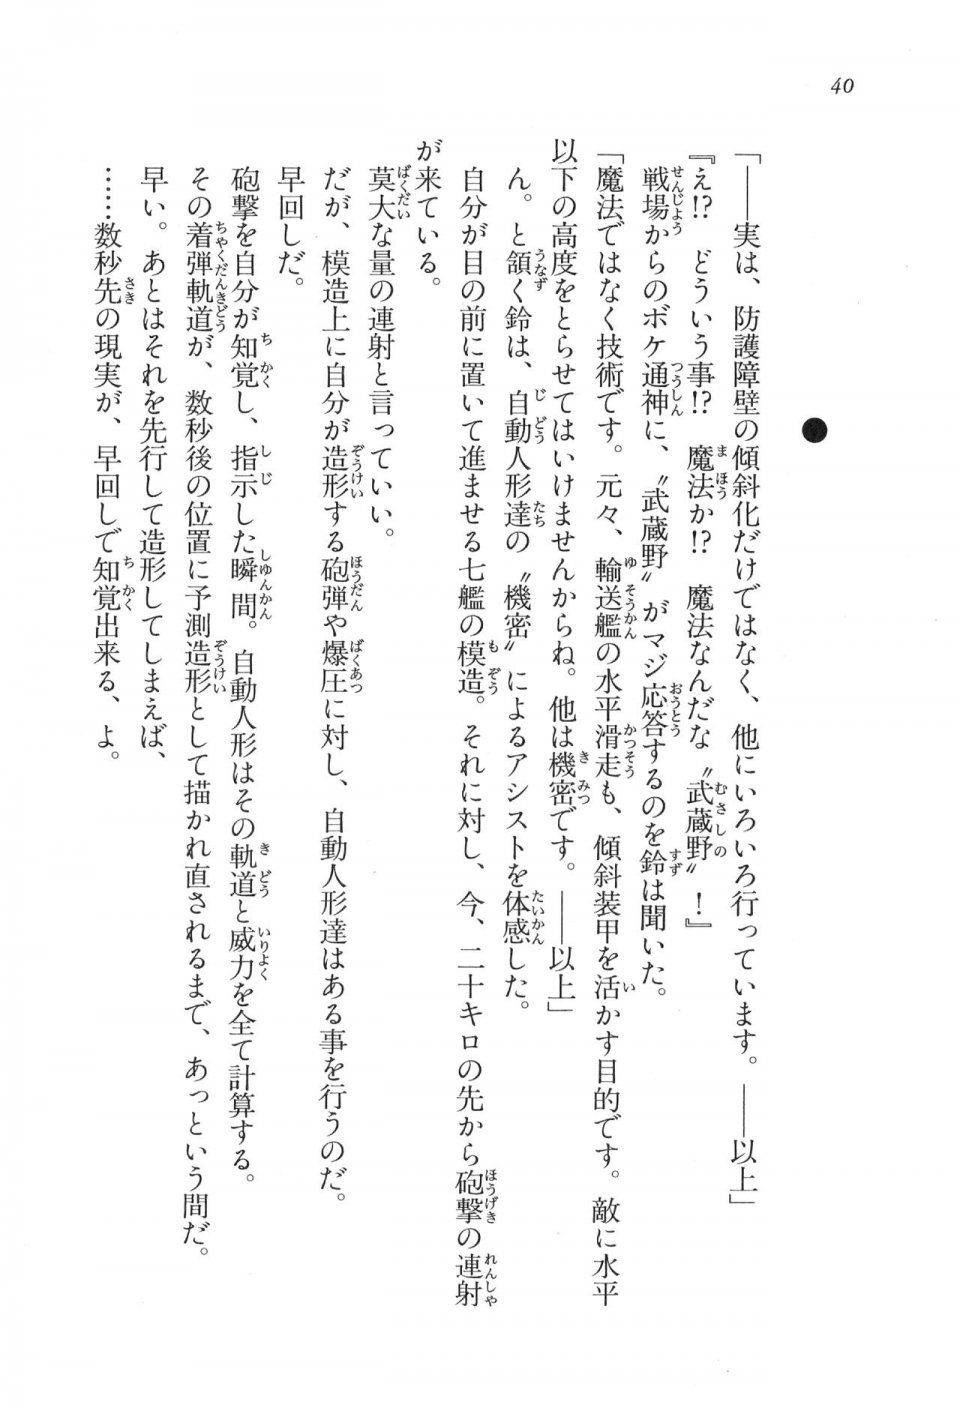 Kyoukai Senjou no Horizon LN Vol 17(7B) - Photo #40